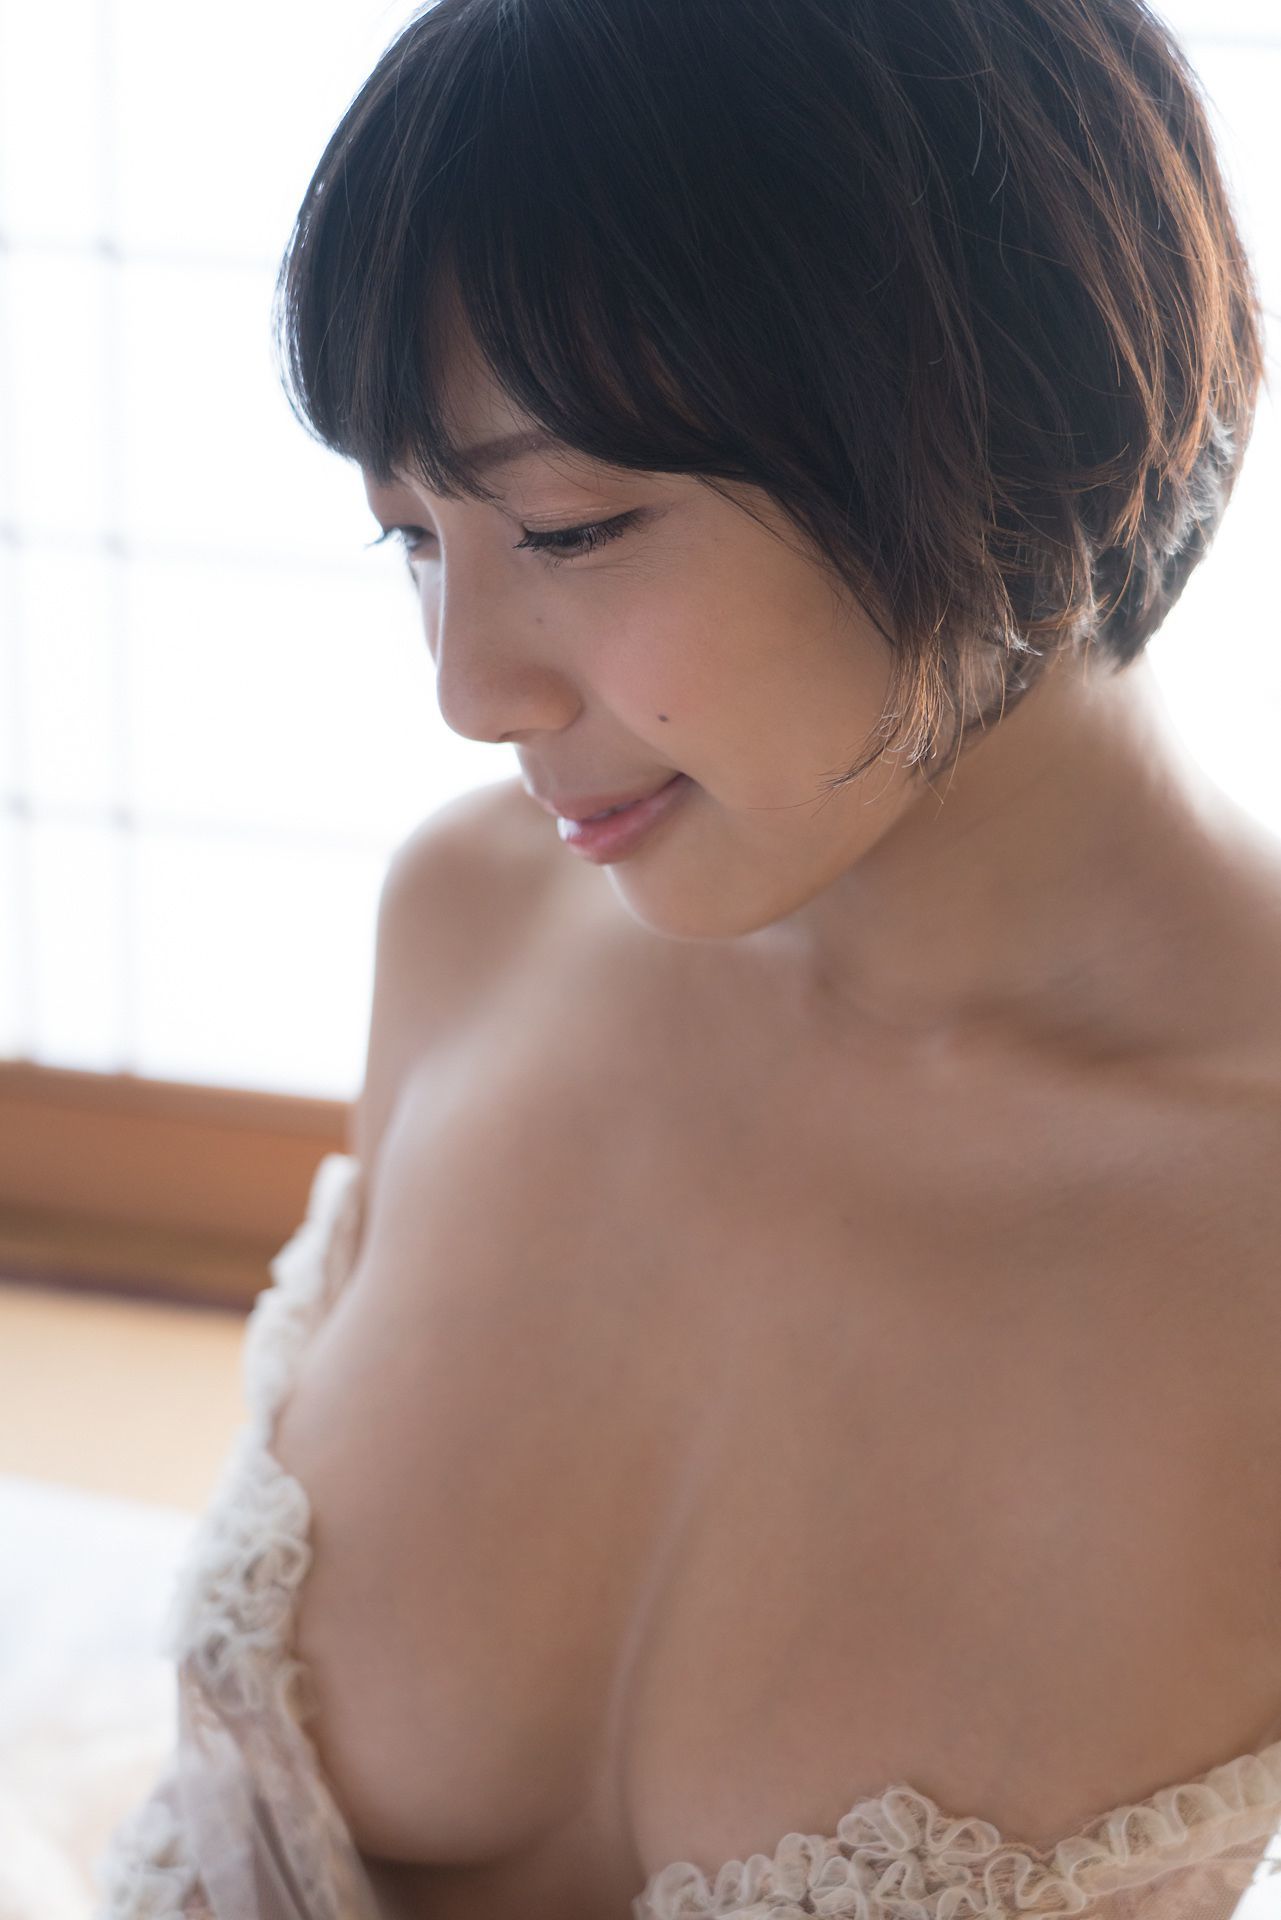 [Minisuka.tv] 麻倉まりな Marina Asakura - 蕾丝人体诱惑巨乳-第12张美女图片